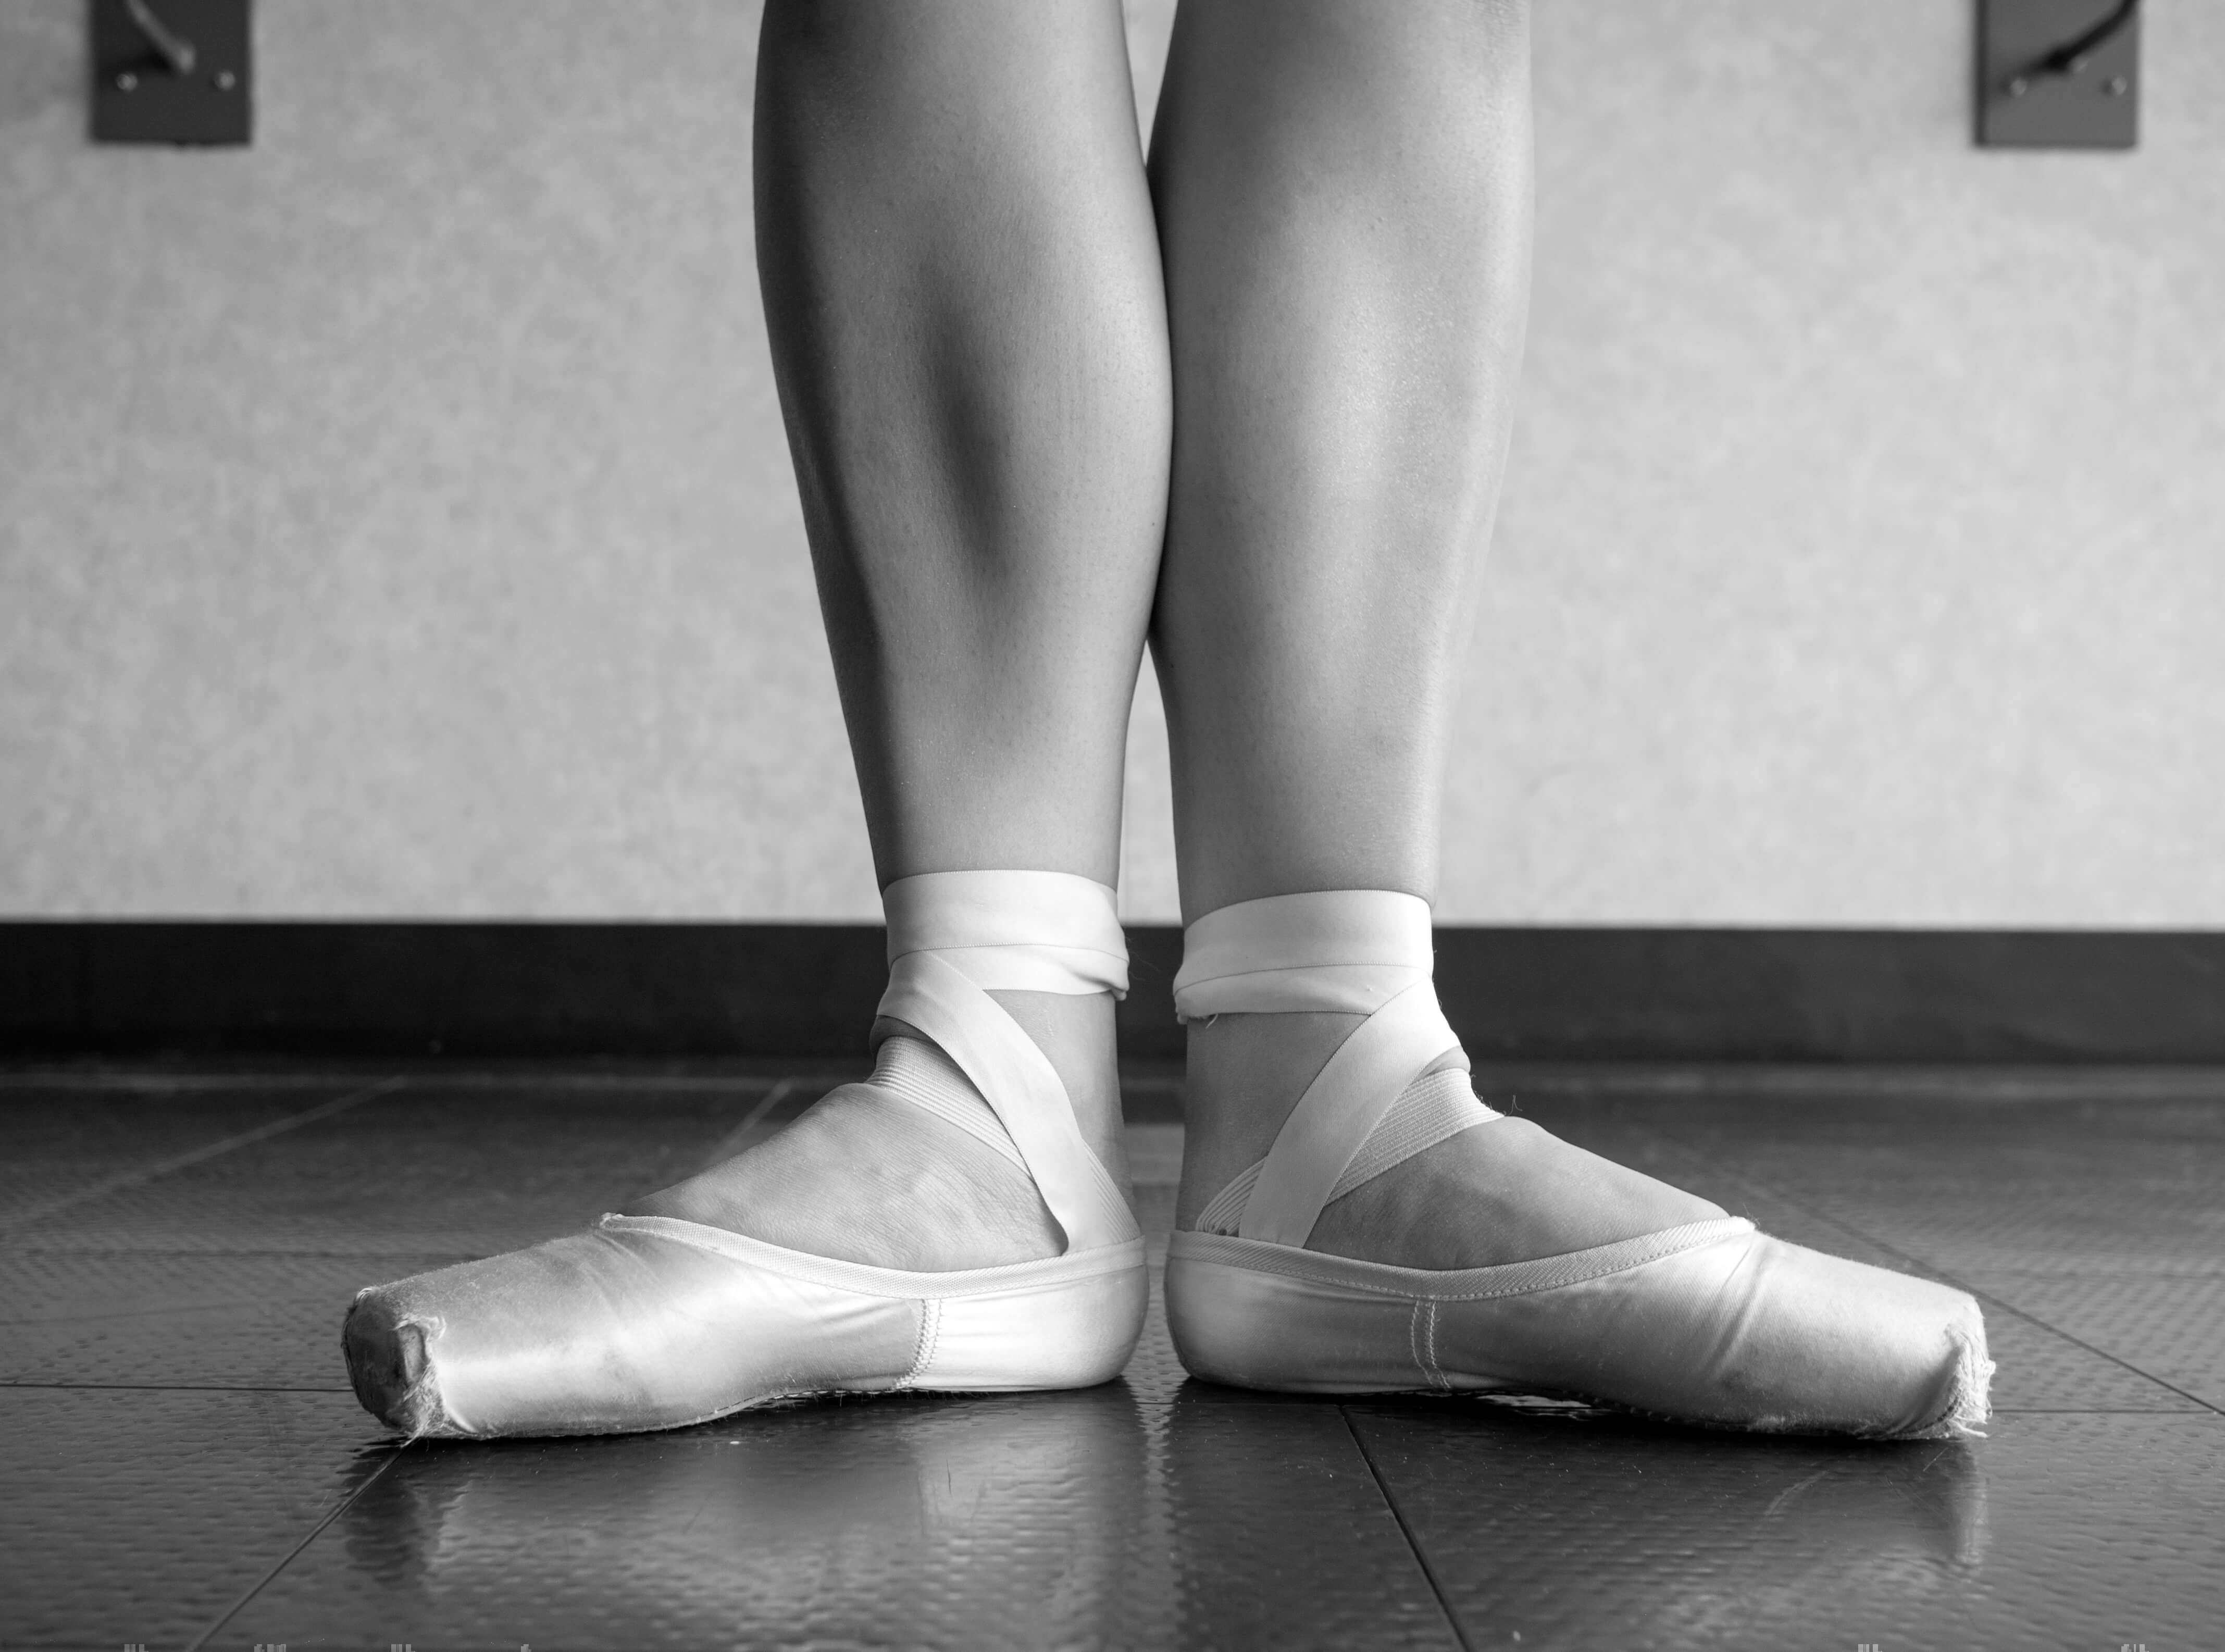 国外精彩芭蕾摄影作品（20P） - 舞蹈图片 - Powered by Discuz!